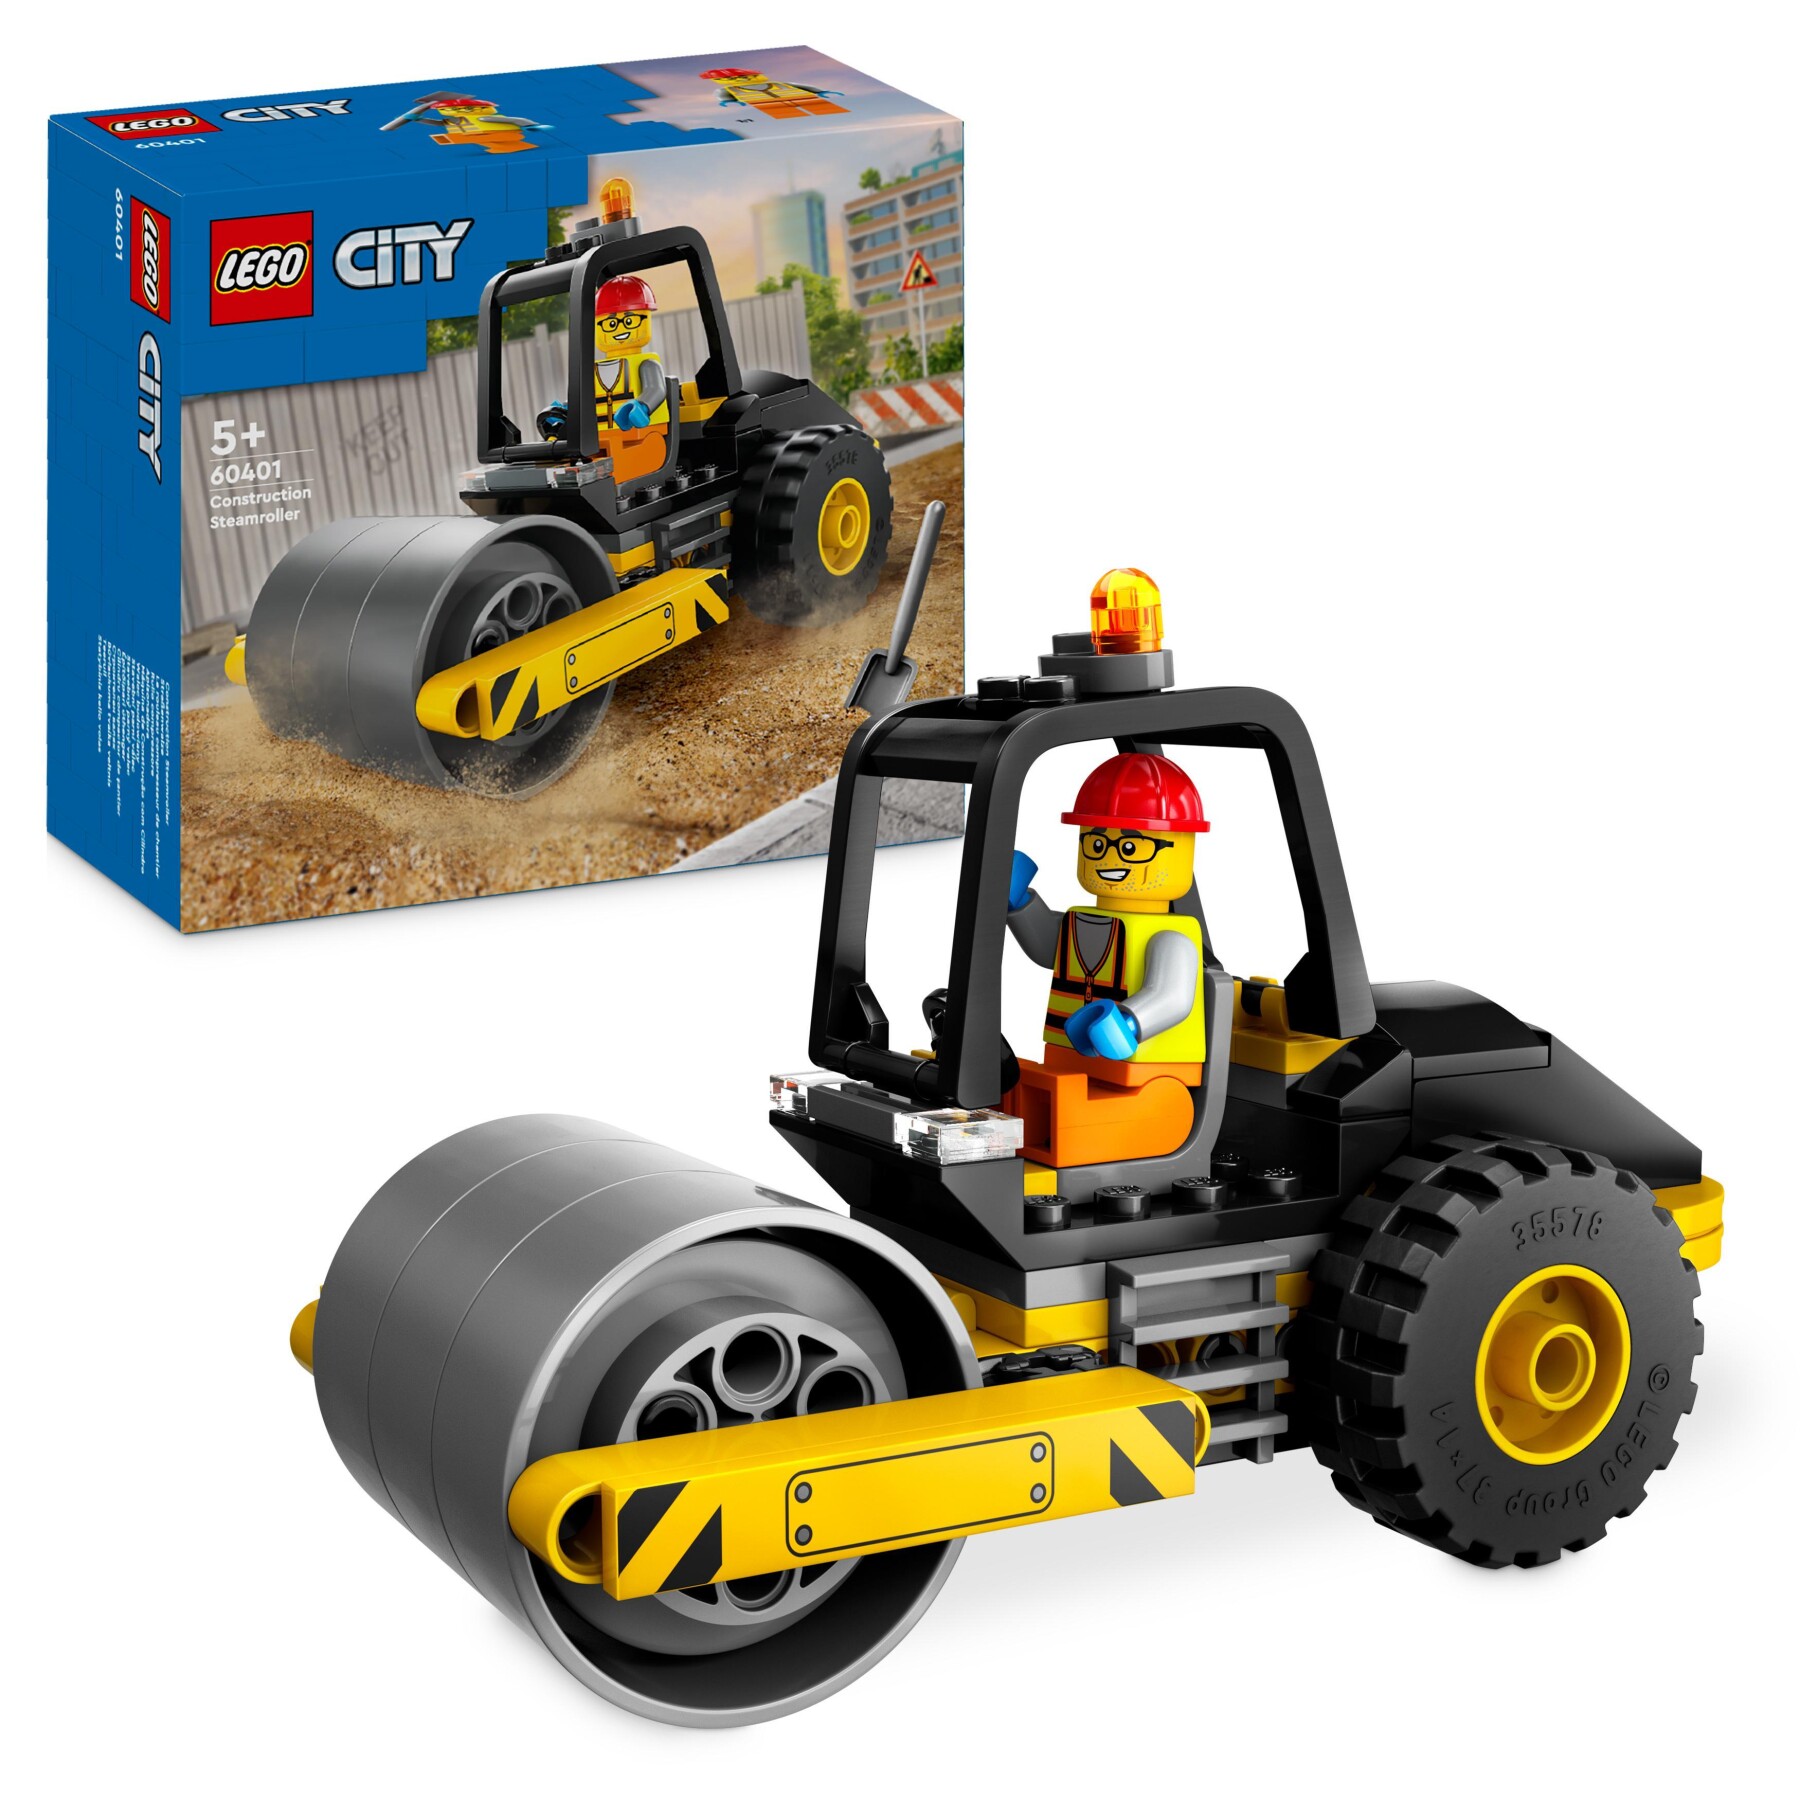 Lego city 60401 rullo compressore, set di costruzioni giocattolo per bambini di 5+ anni, veicolo da cantiere con operaio edile - LEGO CITY